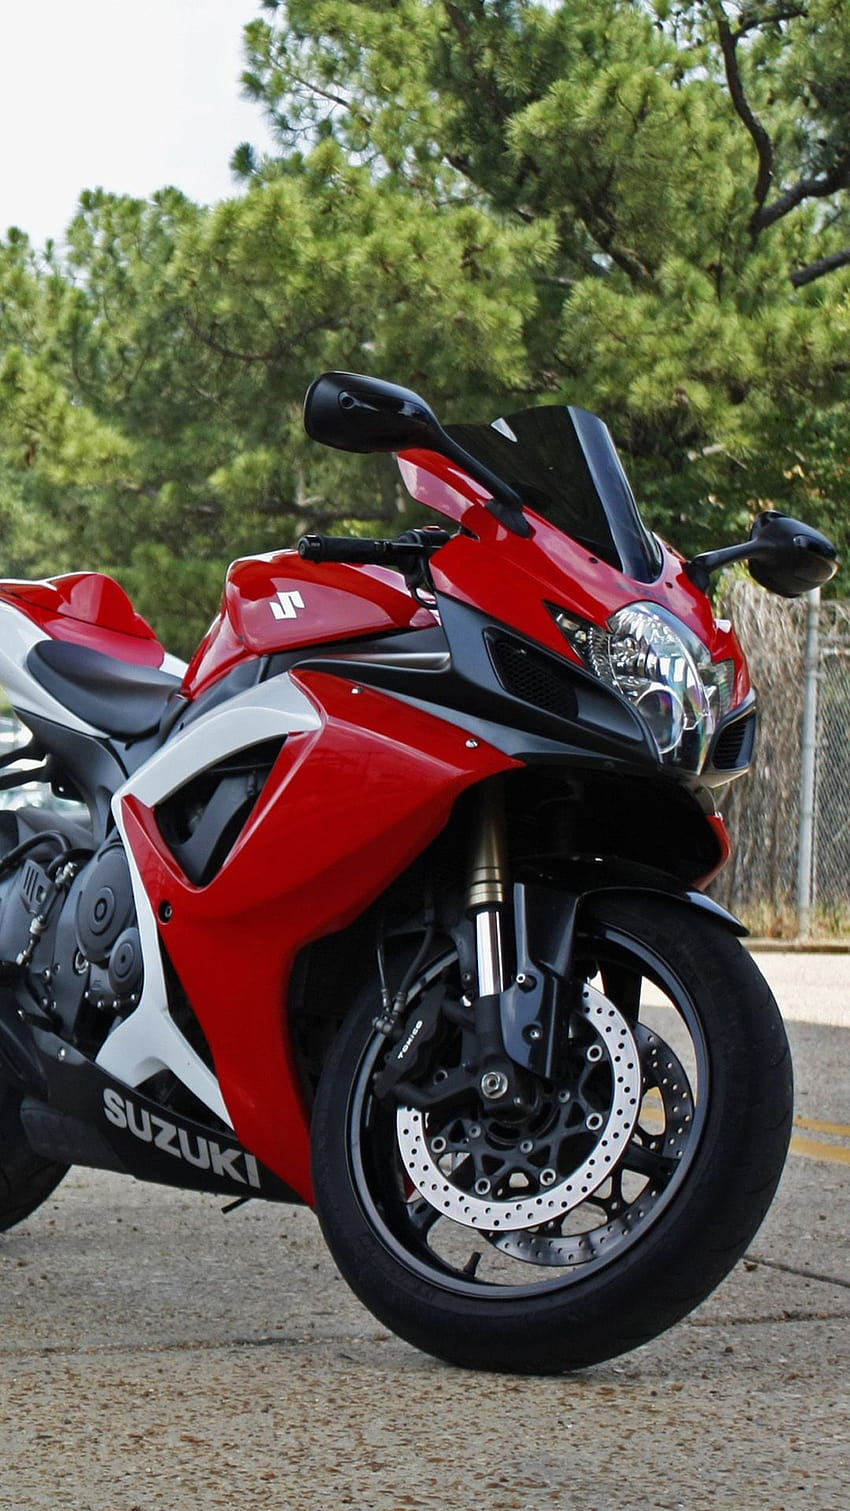 Suzuki Motorcycle - hình nền Android: Ảnh nền Suzuki Motorcycle sẽ khiến cho màn hình điện thoại của bạn đẹp hơn và thu hút mọi ánh nhìn. Với độ sắc nét cao và tinh tế, bạn sẽ được trải nghiệm những hình ảnh cruiser cổ điển đầy động lực và sức mạnh. Hãy tải ngay bộ ảnh này để trang trí cho điện thoại của bạn.